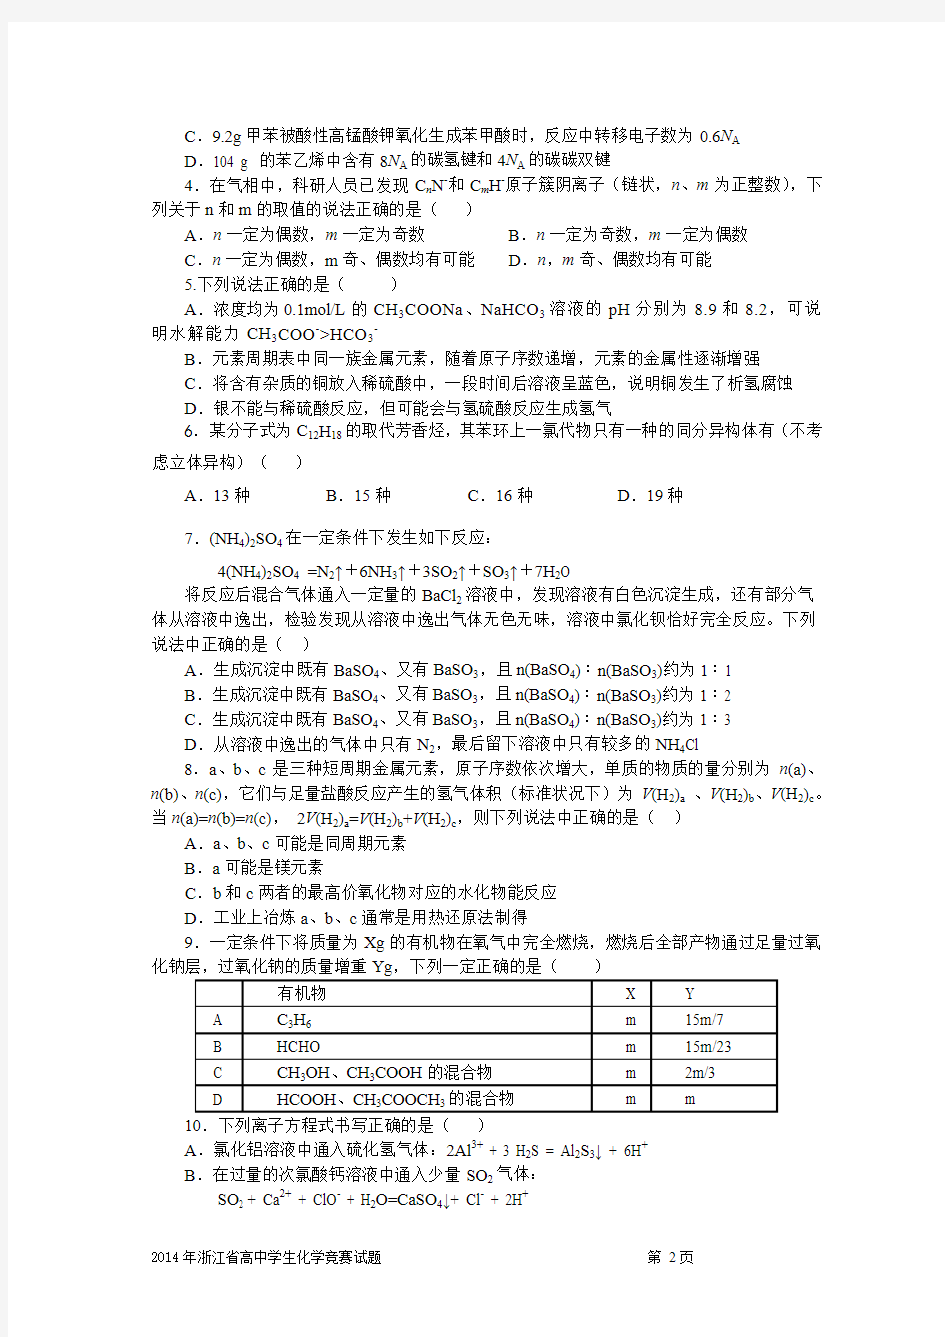 2014年浙江省高中学生化学竞赛预赛试题)(1)